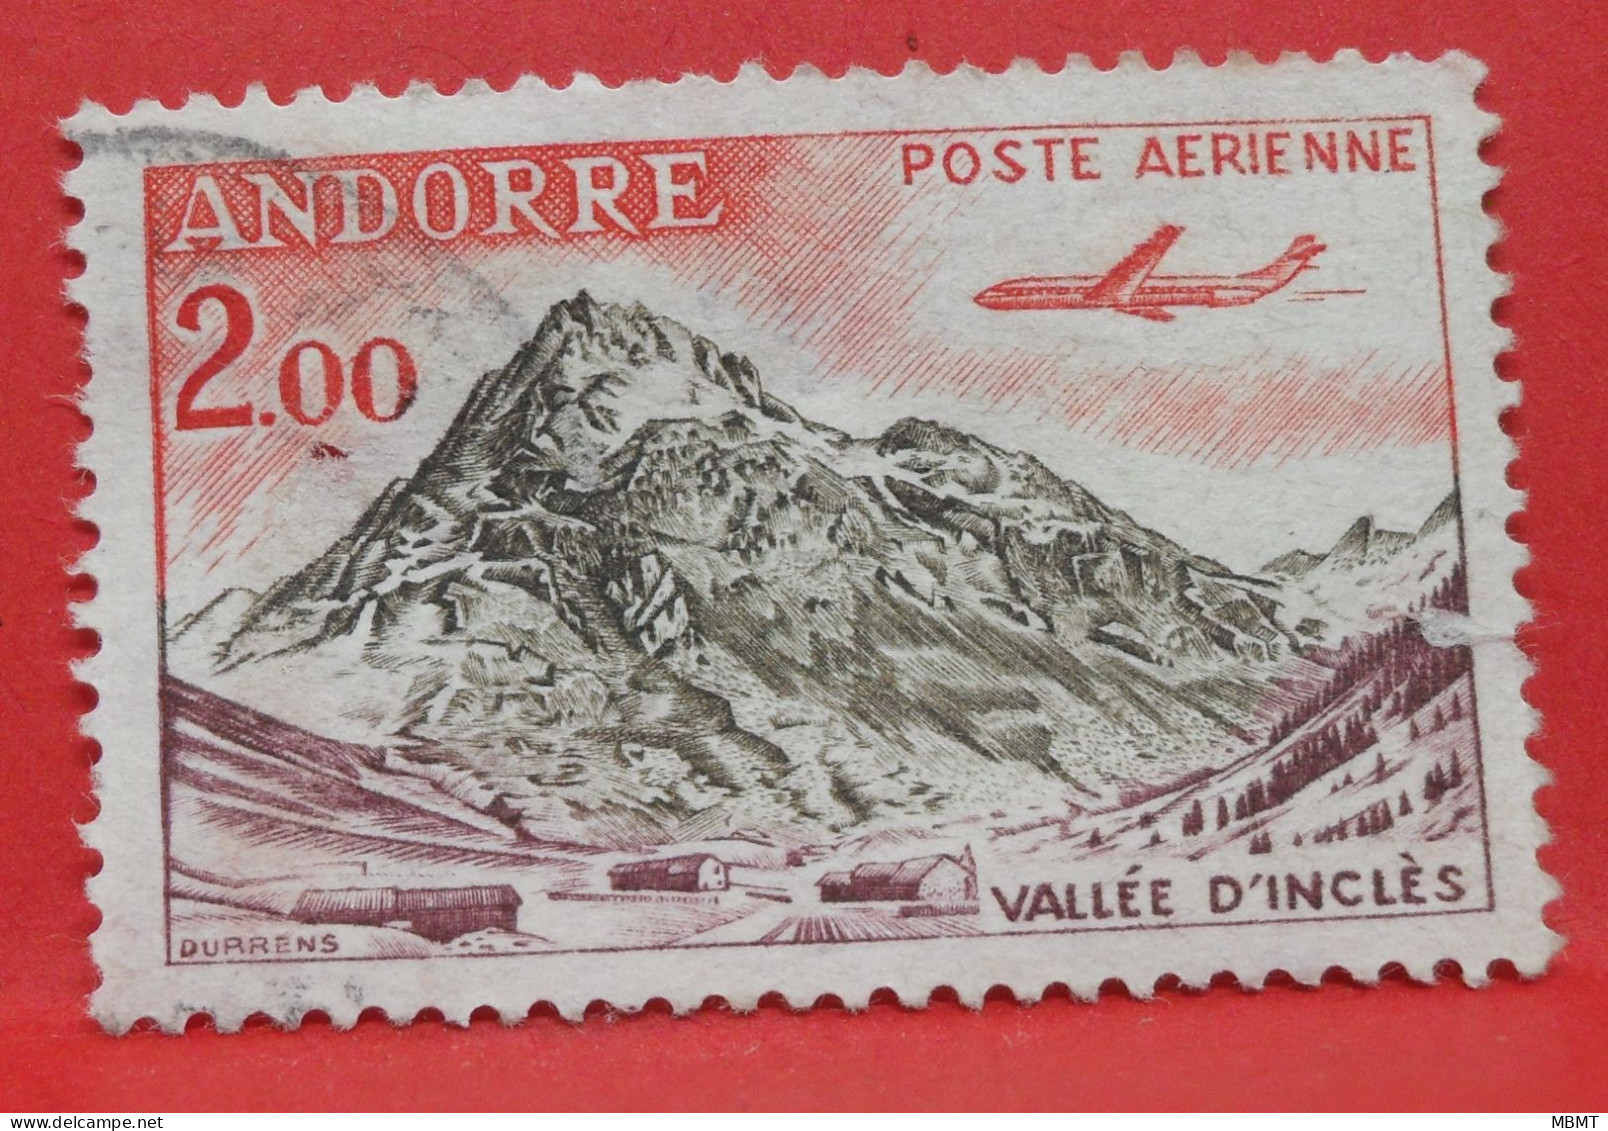 N°175 - 2.00 Francs - Année 1961 - Timbre Oblitéré Andorre Français - - Oblitérés